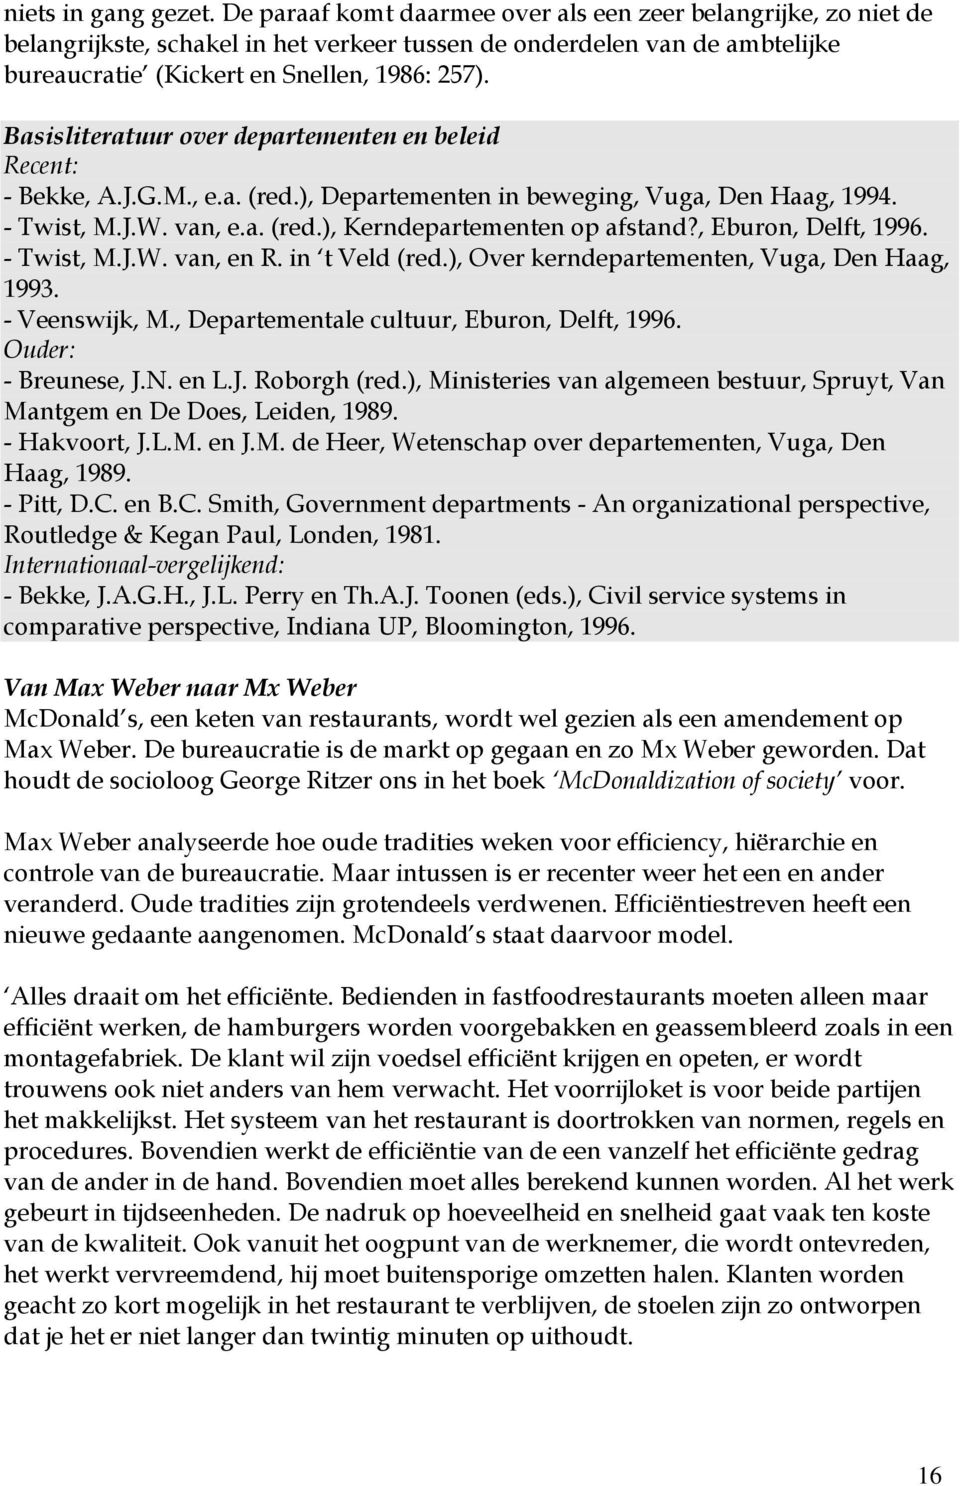 Basisliteratuur over departementen en beleid Recent: - Bekke, A.J.G.M., e.a. (red.), Departementen in beweging, Vuga, Den Haag, 1994. - Twist, M.J.W. van, e.a. (red.), Kerndepartementen op afstand?